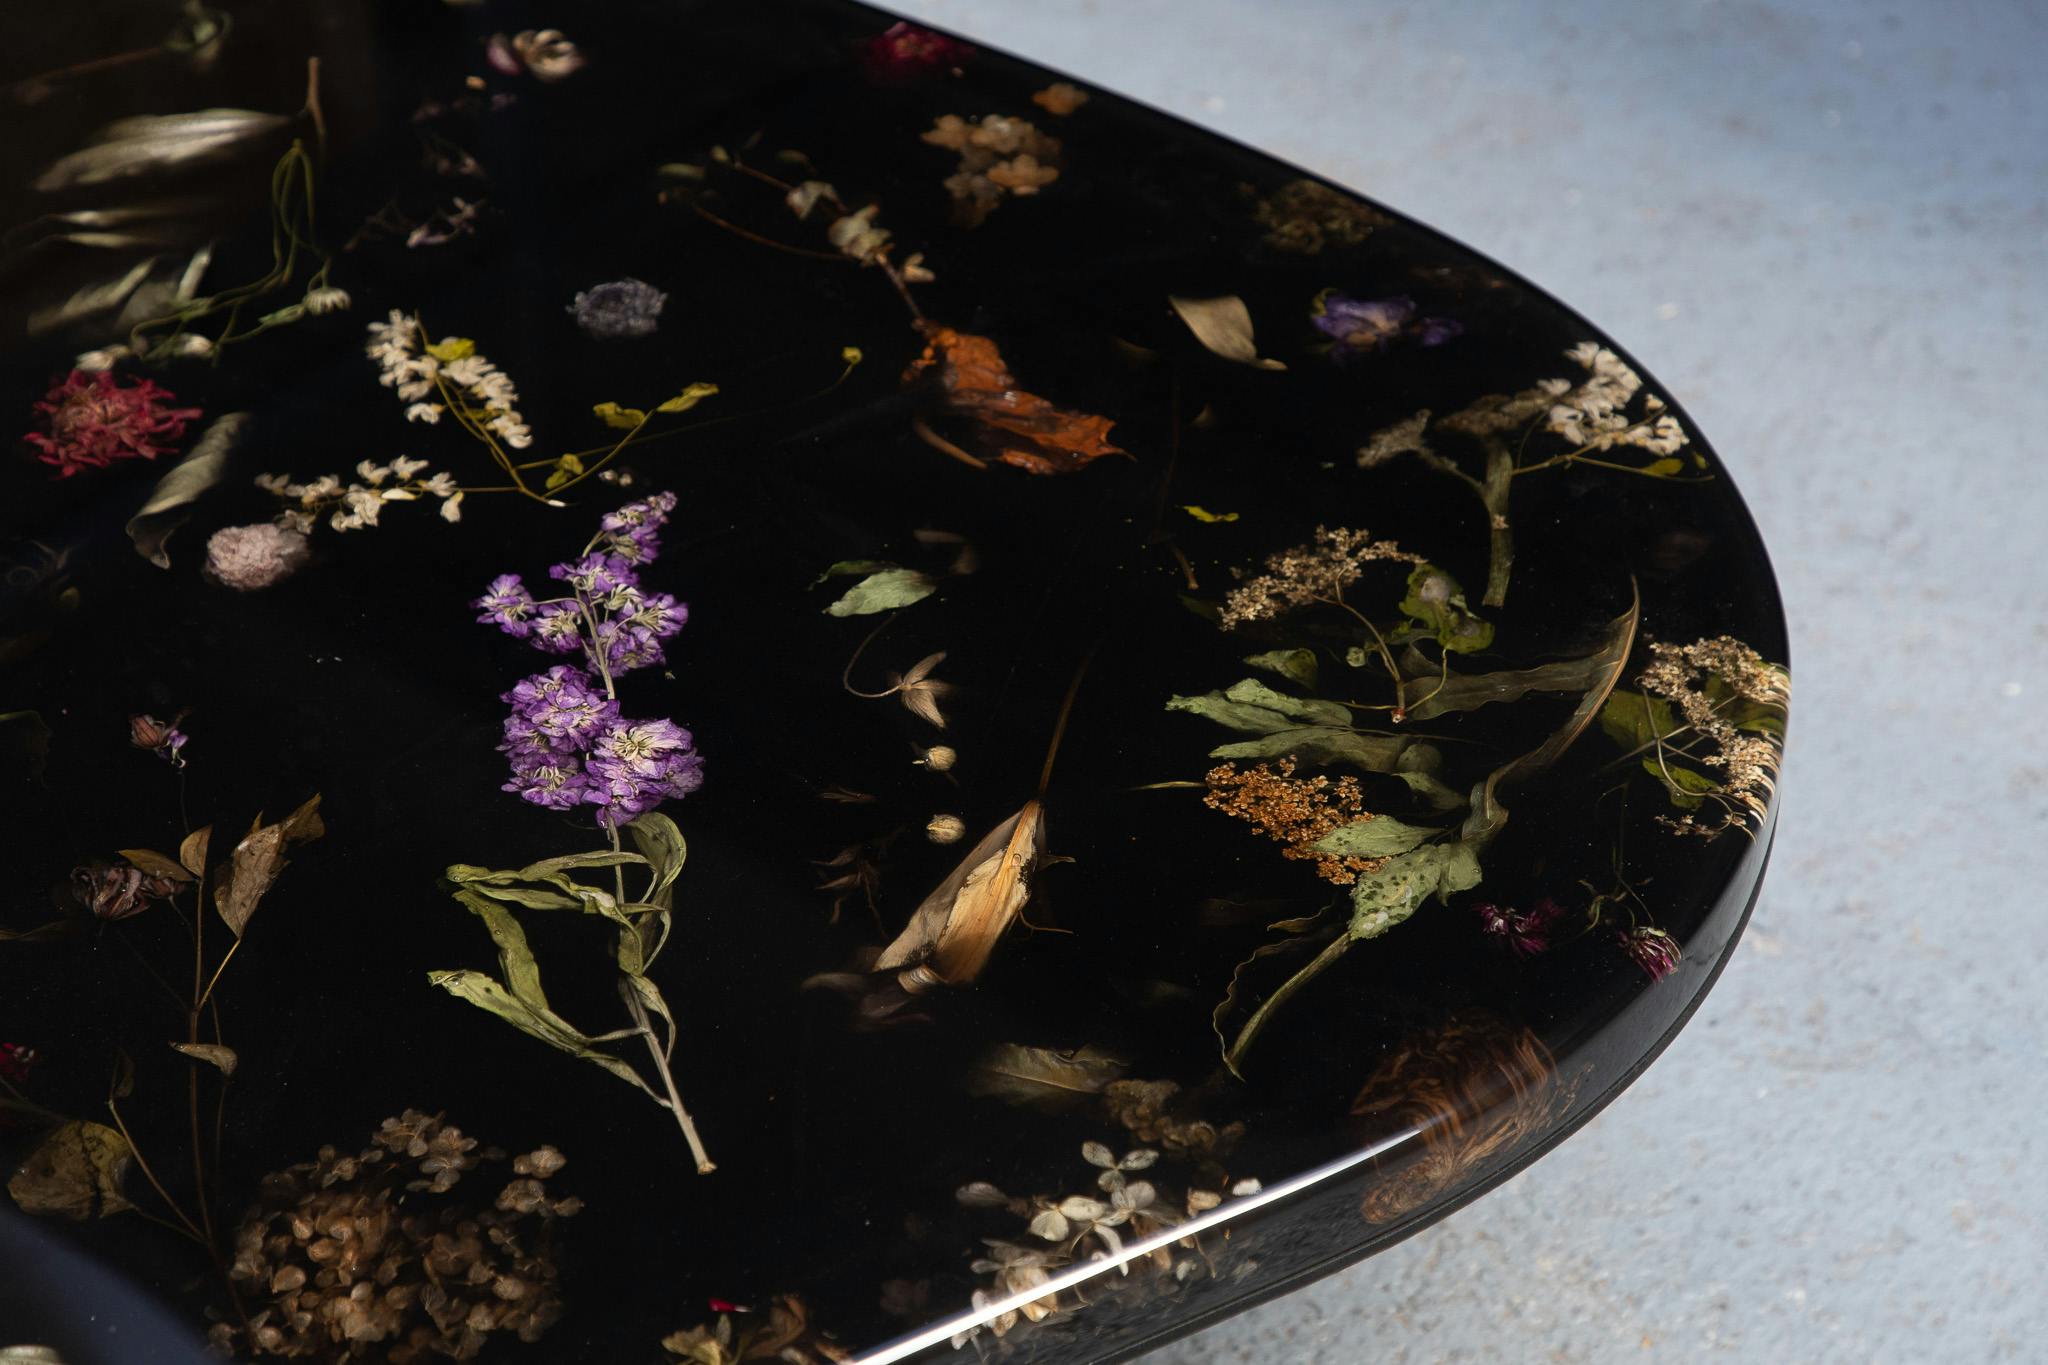 Details of flowers suspended in inky black resin in Marcin Rusak's FLORA coffee table